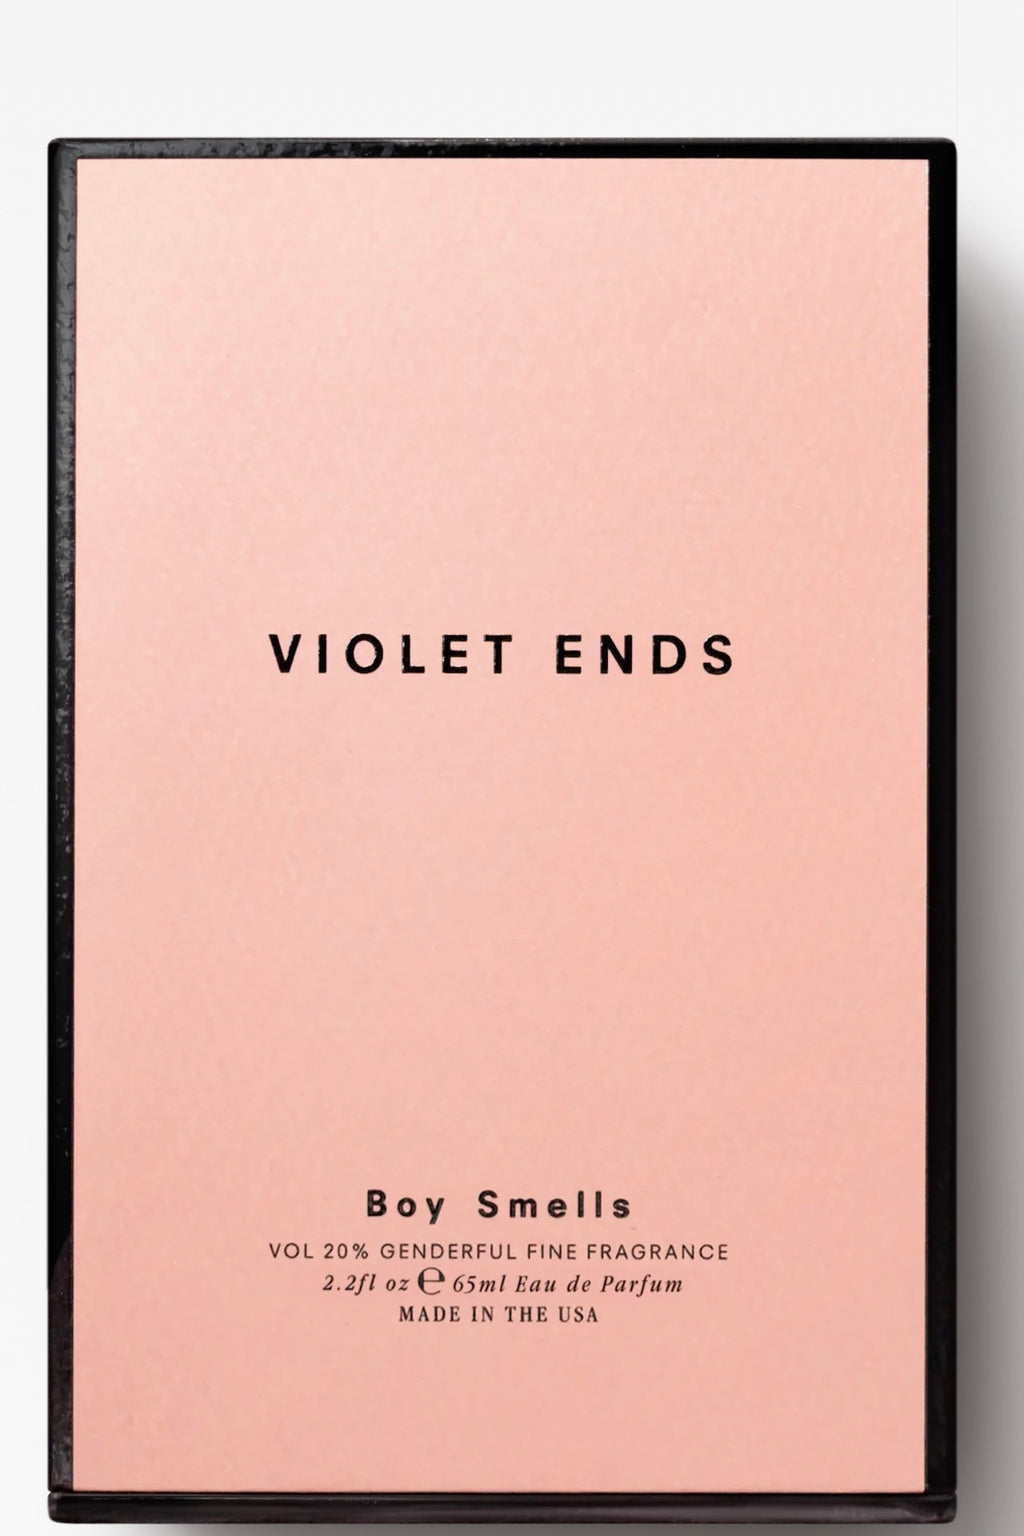 VIOLET ENDS fragrance